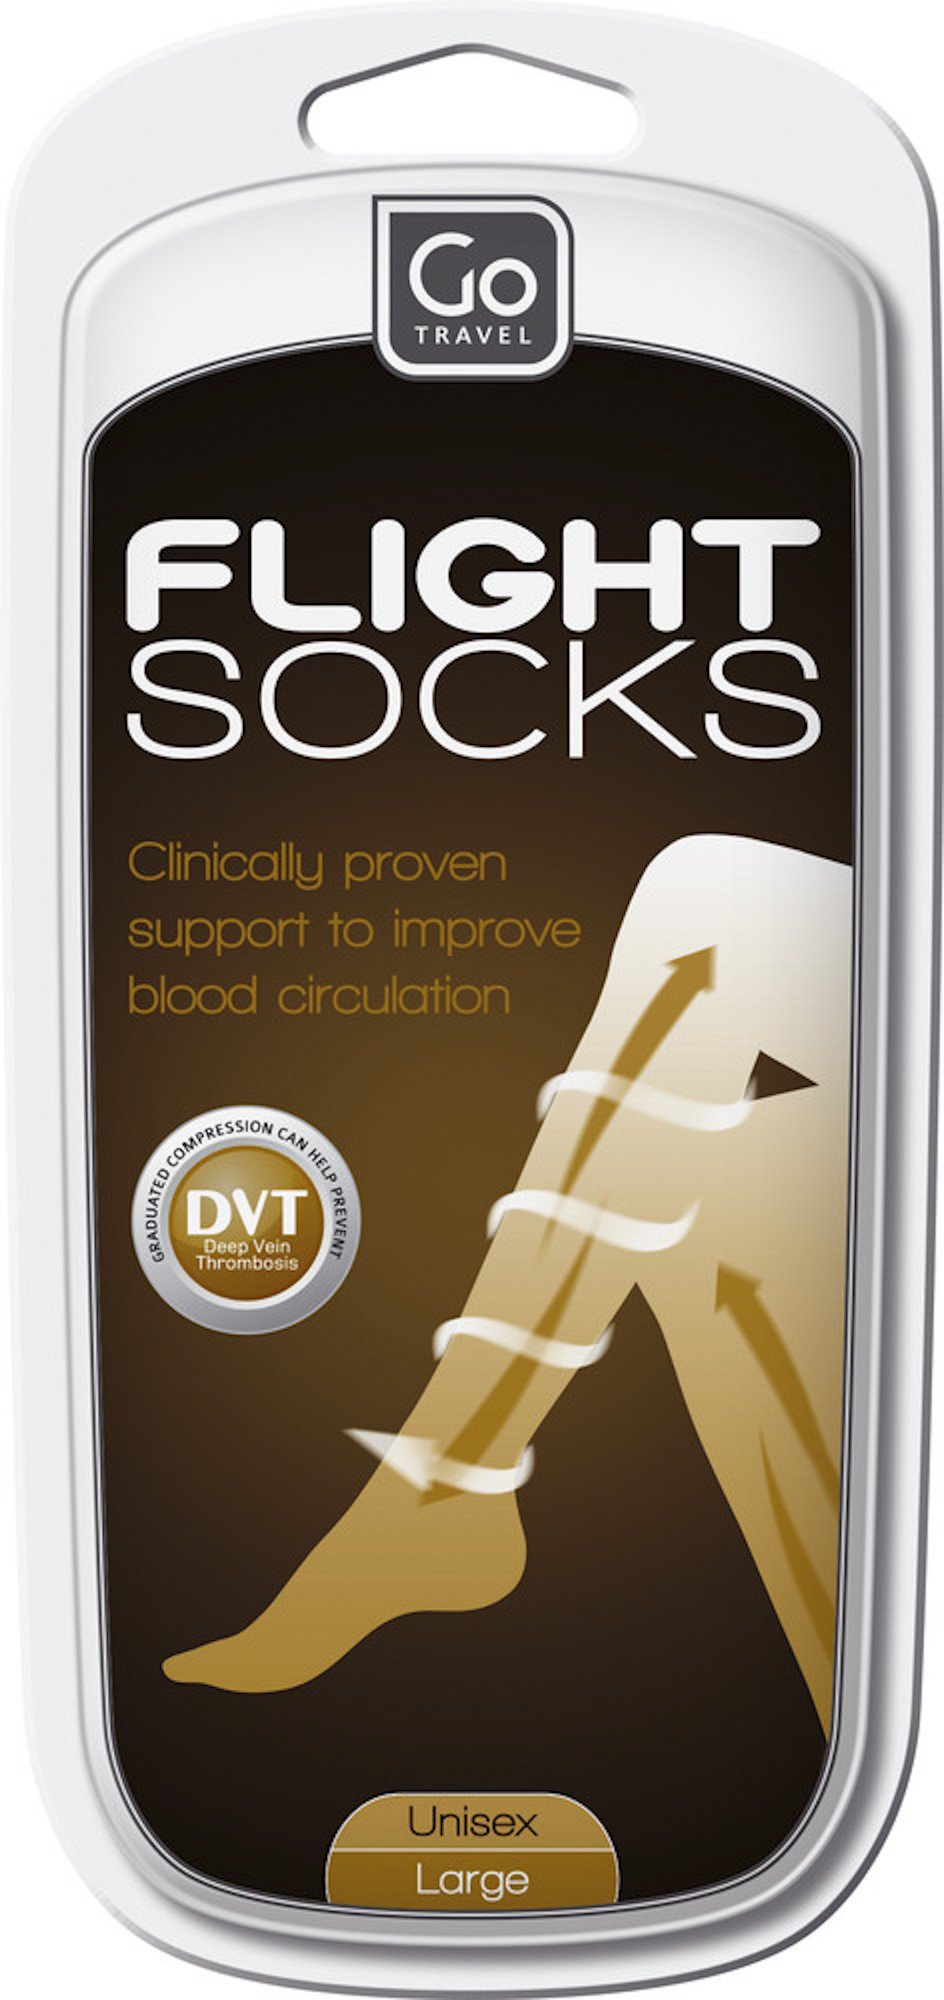 go travel flight socks